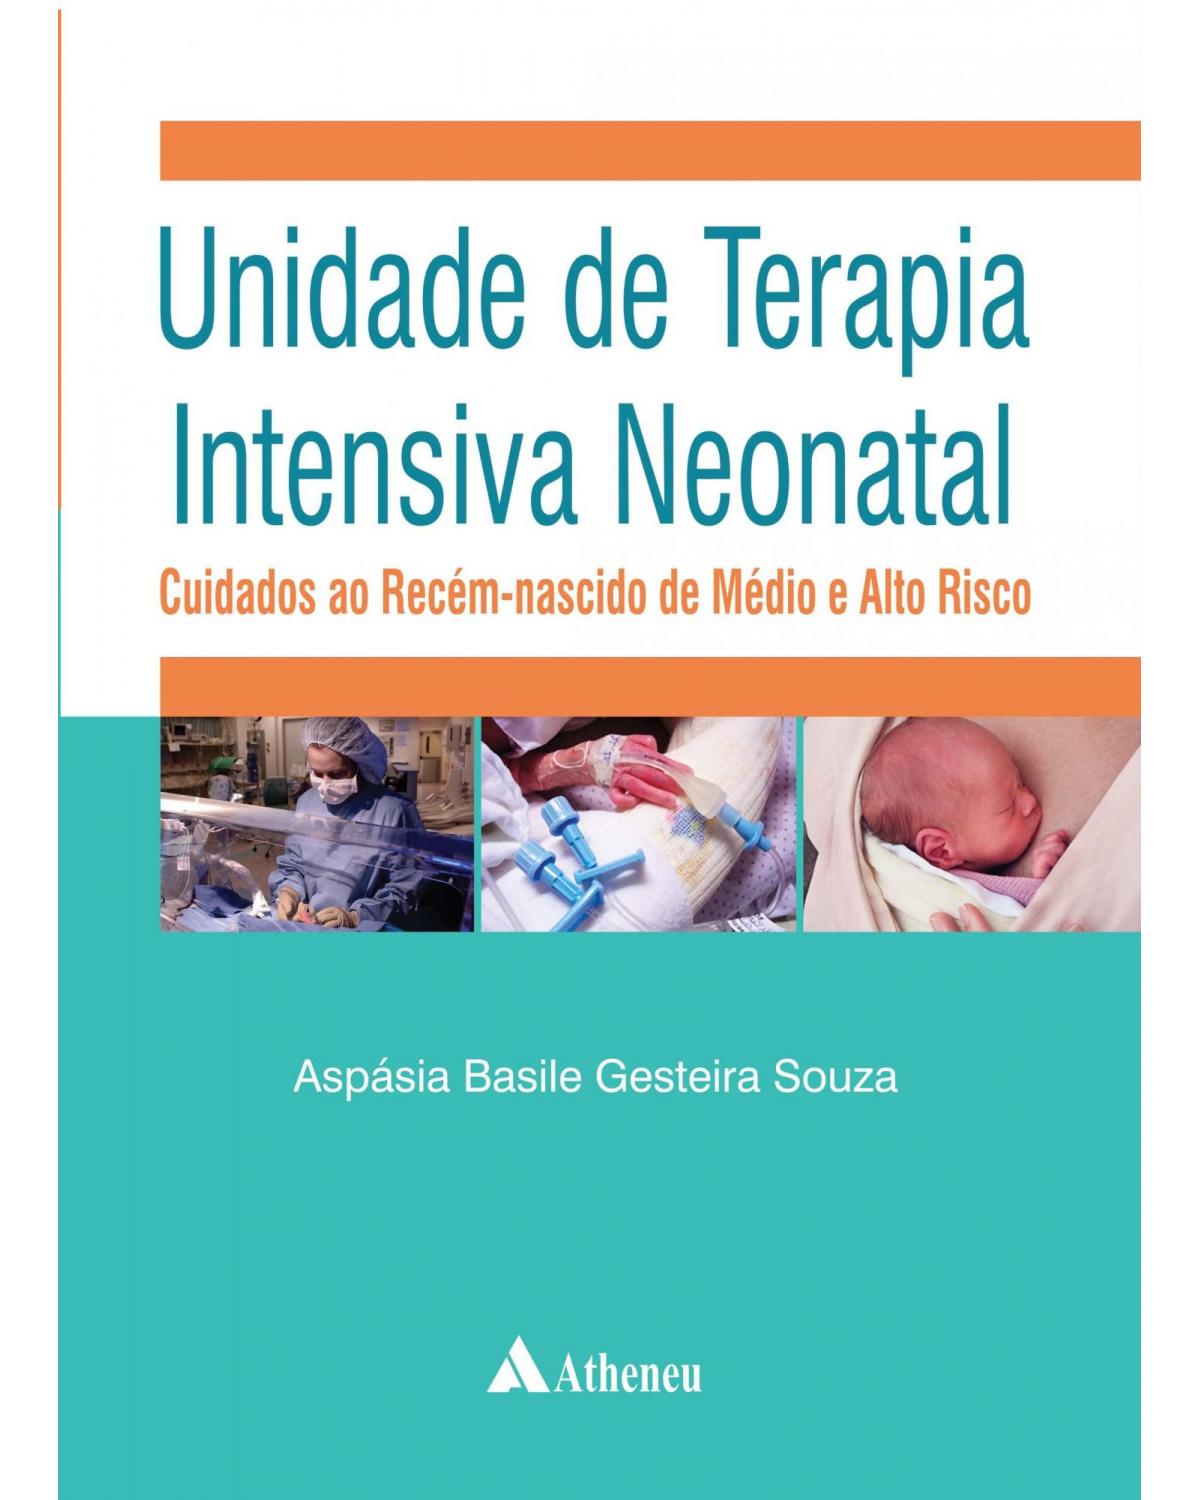 Unidade de terapia intensiva neonatal - cuidados ao recém-nascido de médio e alto risco - 1ª Edição | 2015